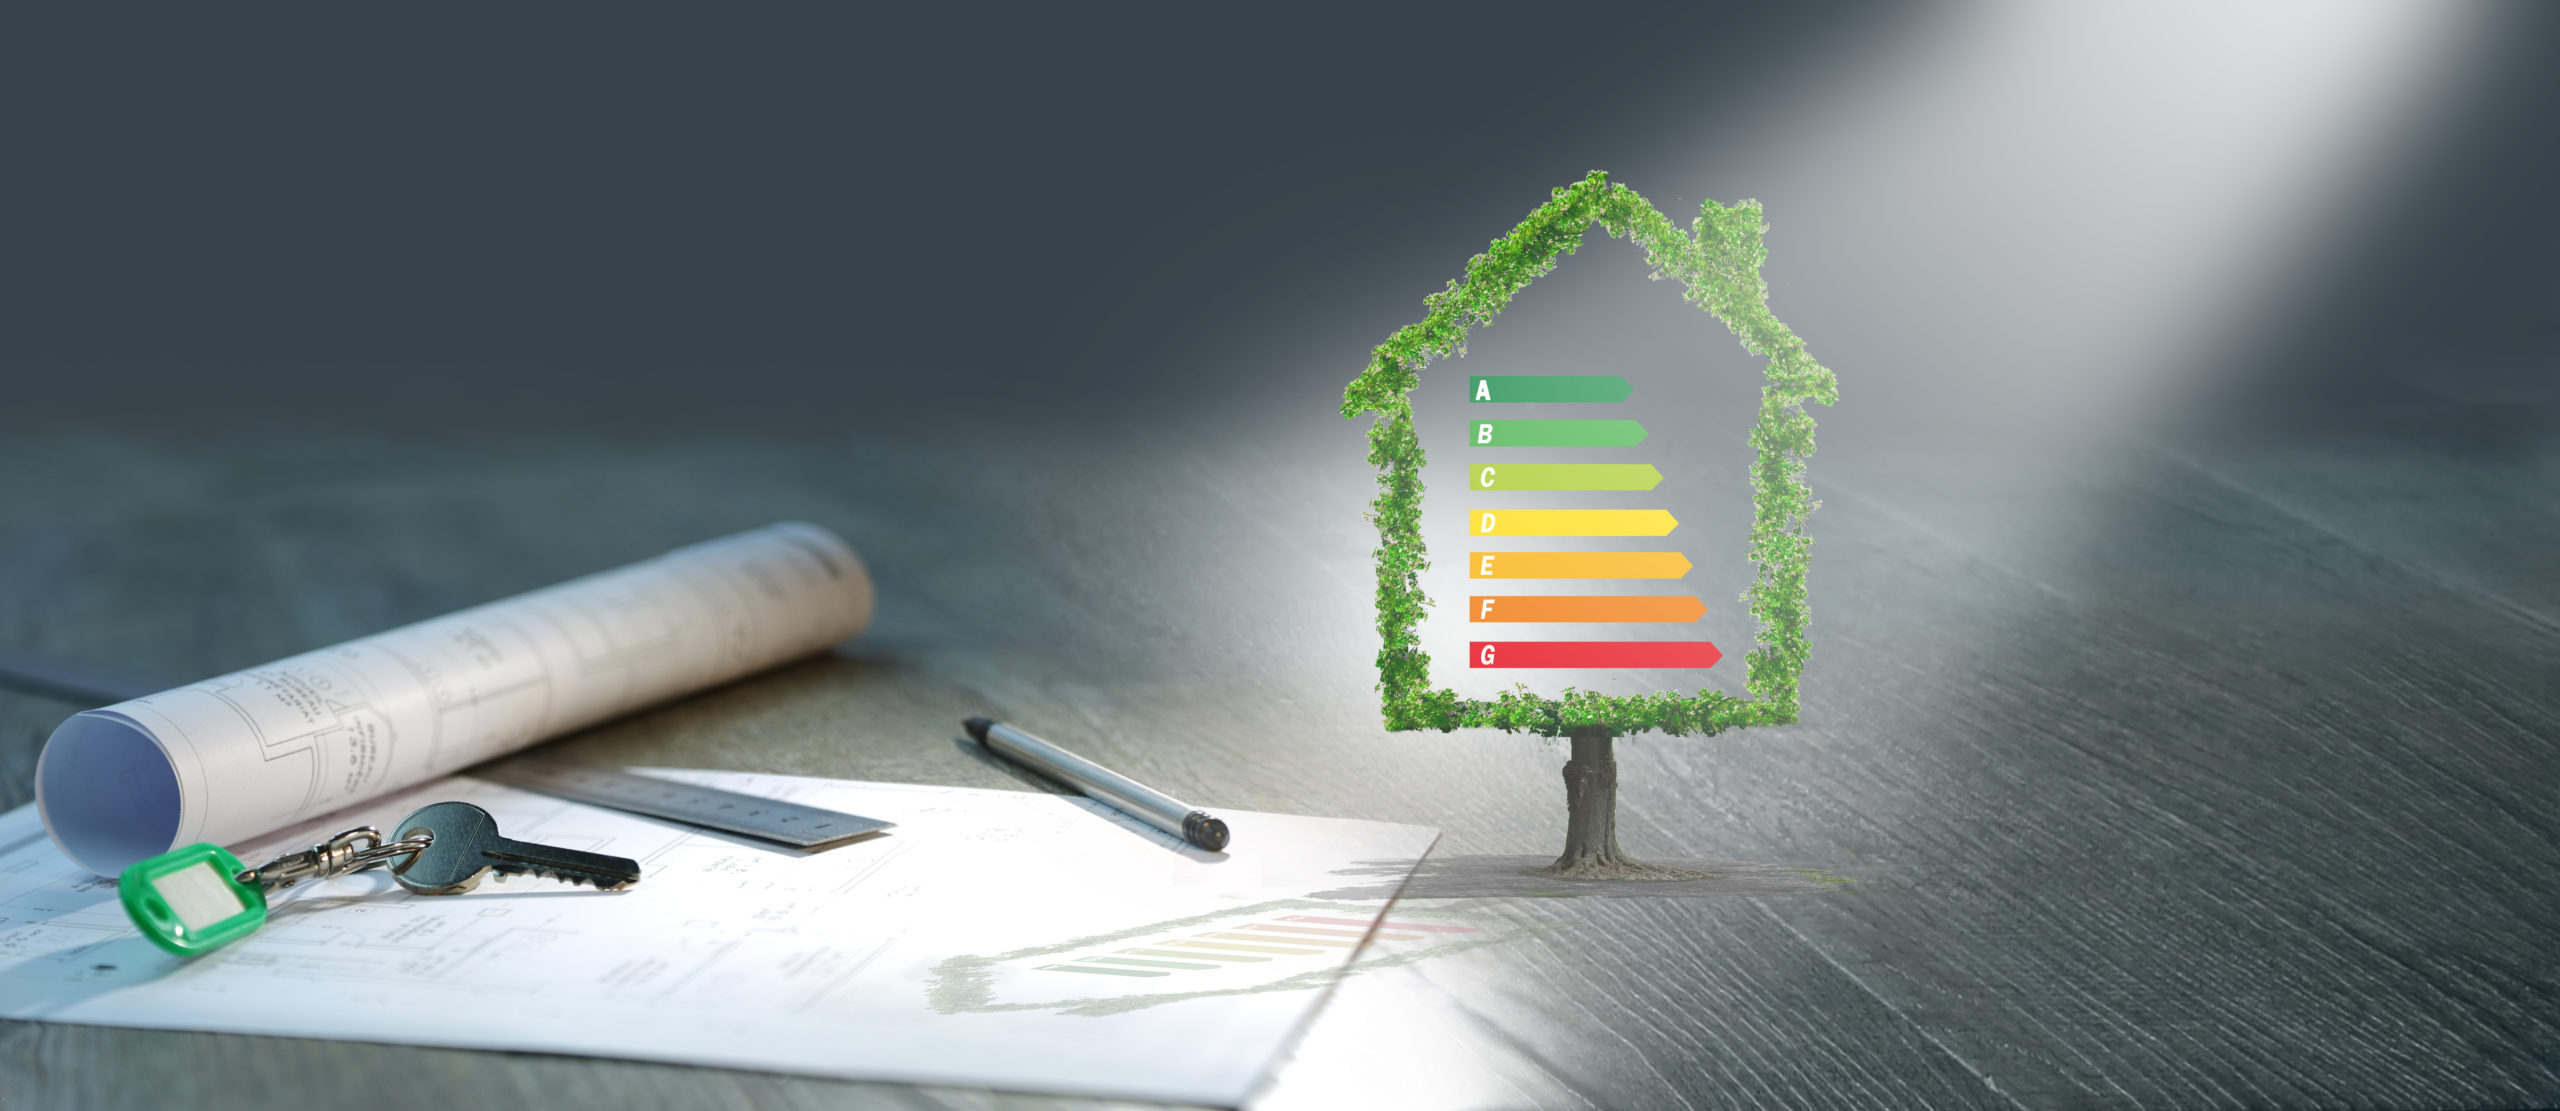 Quelles sont les interventions à envisager pour améliorer le Diagnostic de Performance Énergétique (DPE) de son logement ?